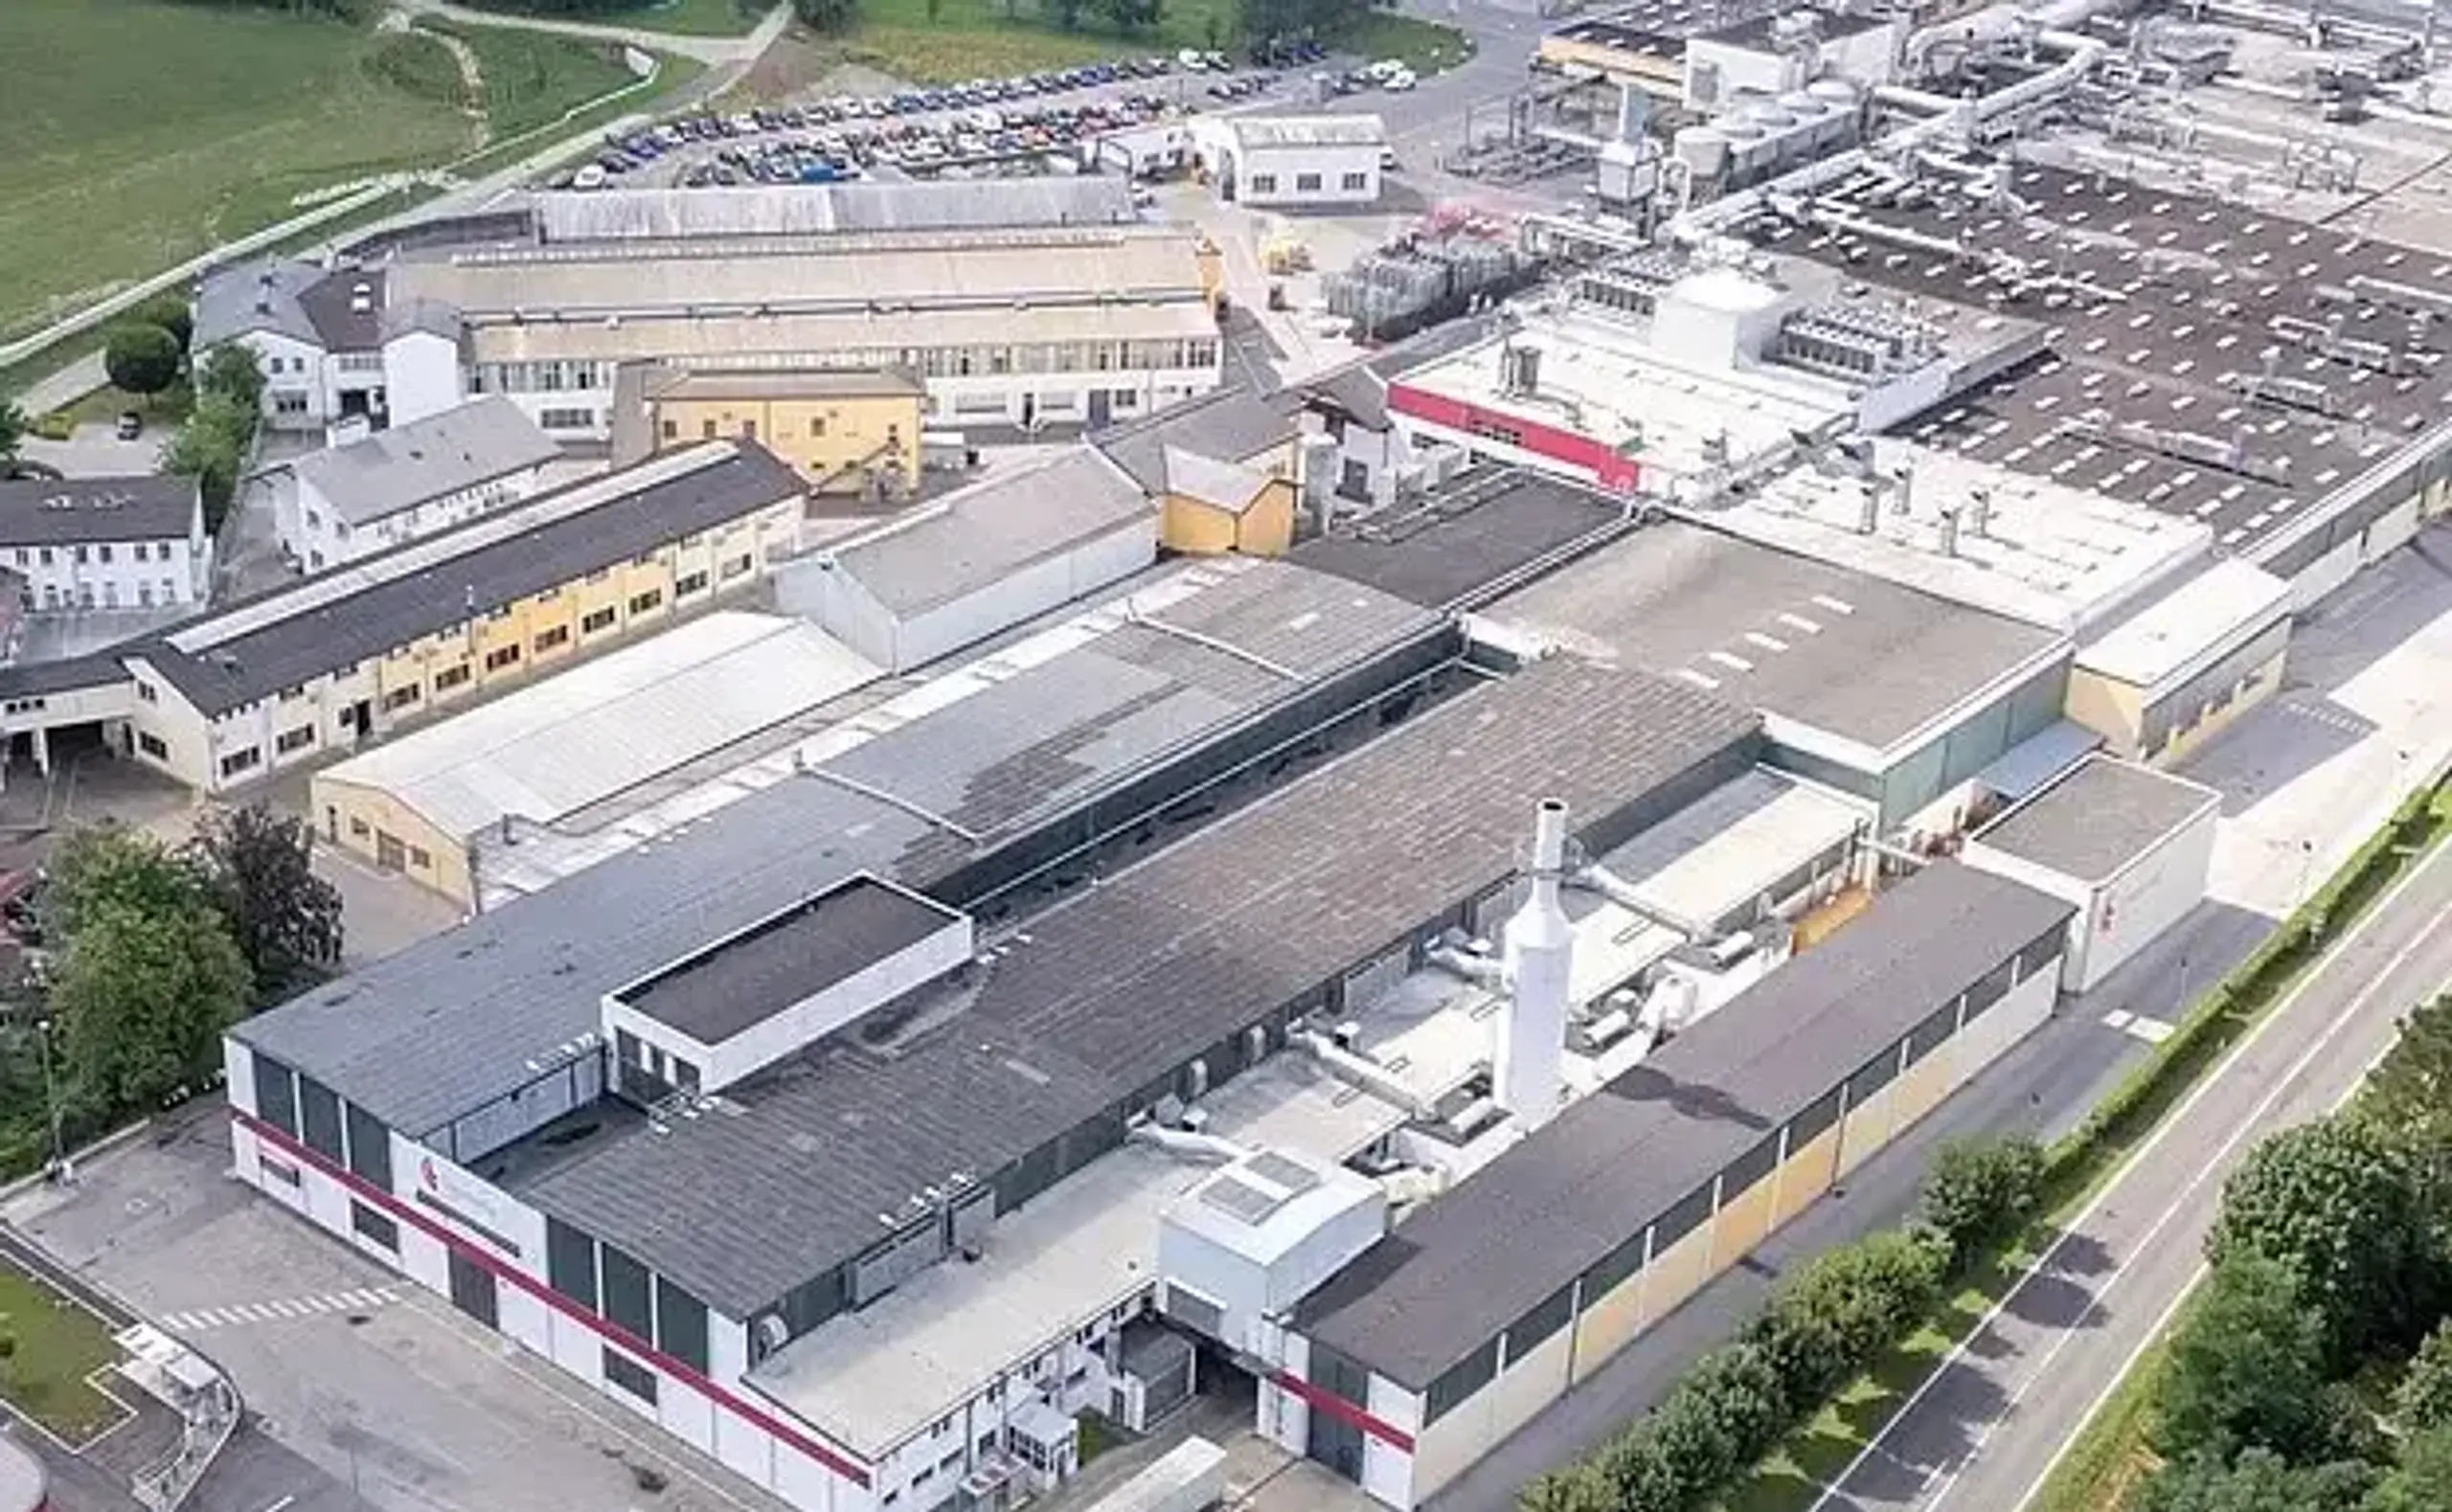 Das Constantia Teich Werk in Weinburg (NÖ). Constantia Teich ist das größte Unternehmen in der europäischen flexiblen Verpackungsindustrie und erzielt die höchtsen Umsätze der Constantia Flexibles Group.